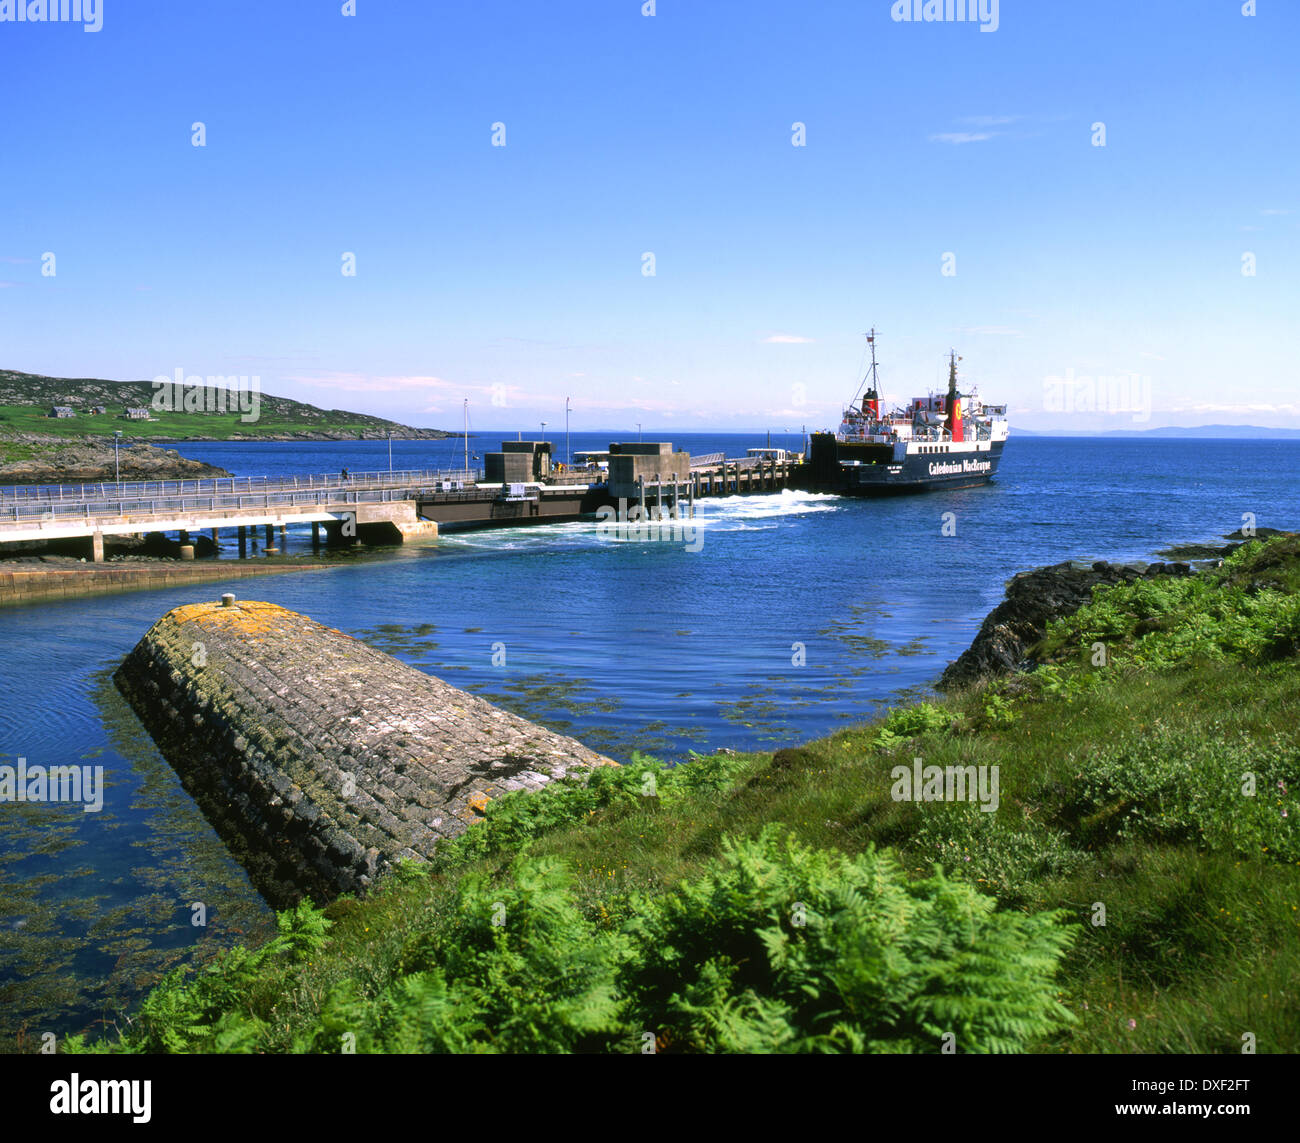 M.V.Isle of Arran departs Colonsay pier, Hebrides Stock Photo